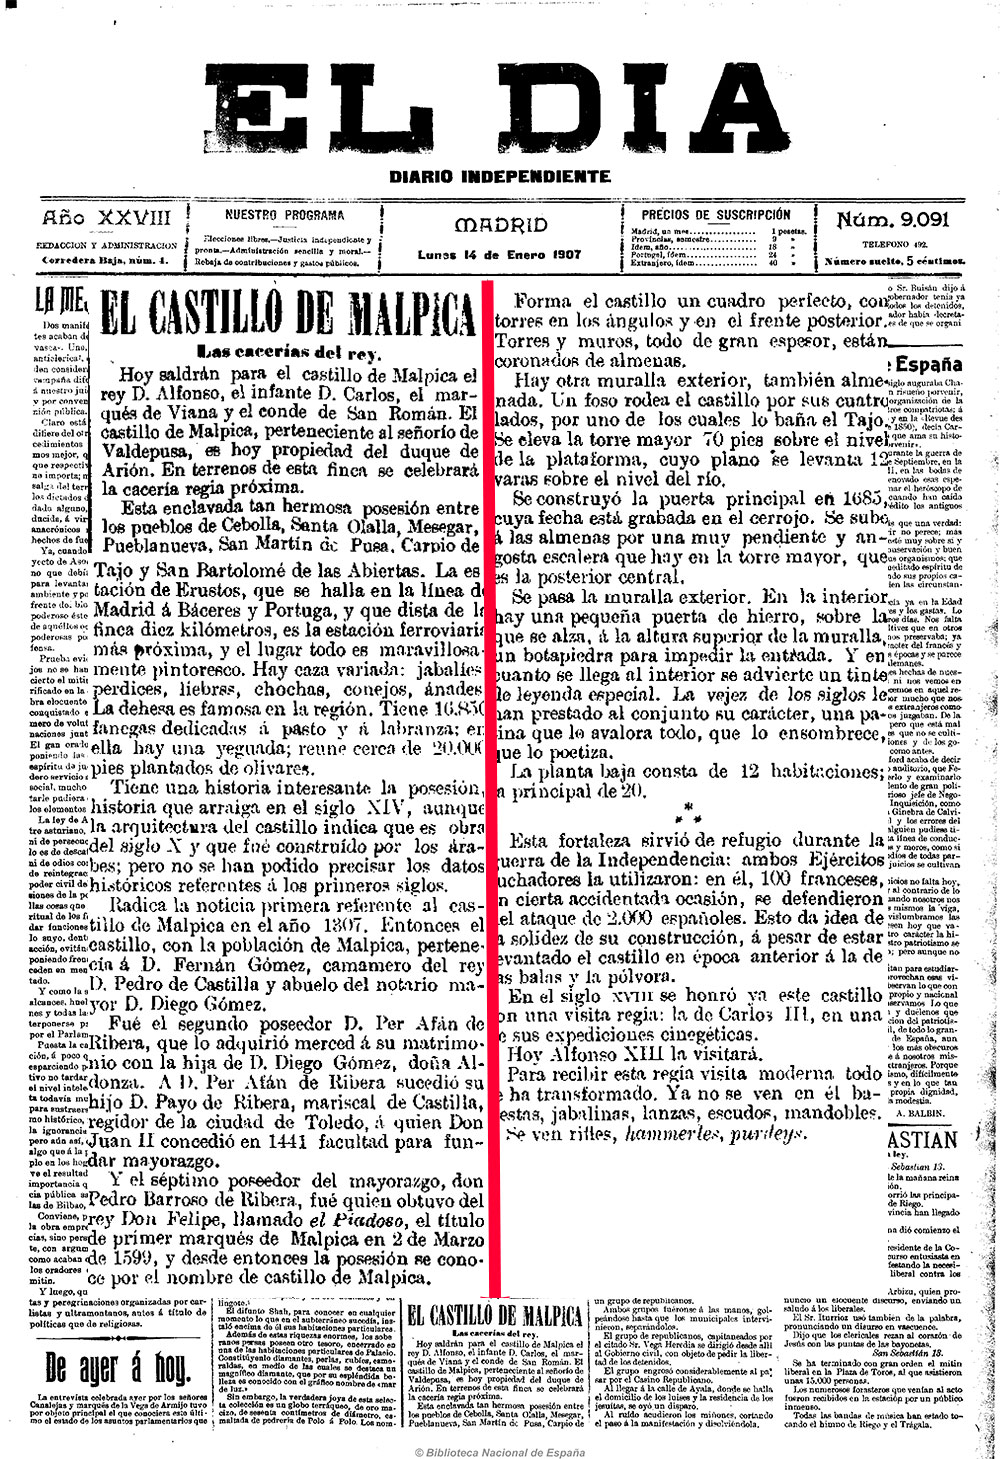 Cacería regia en Malpica (1907)